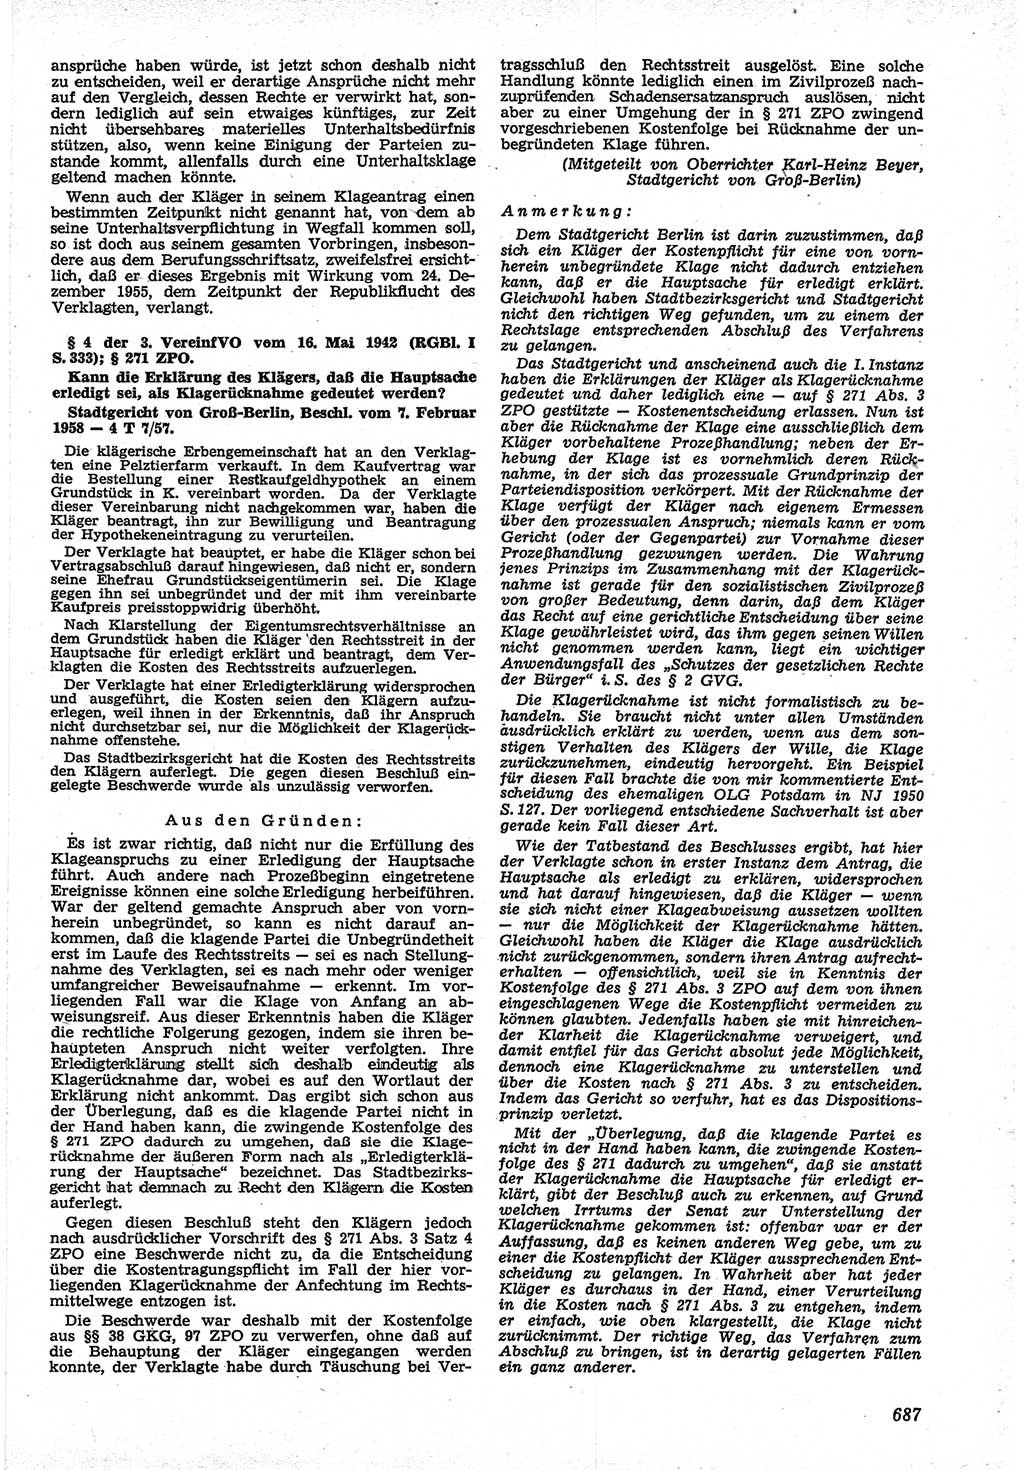 Neue Justiz (NJ), Zeitschrift für Recht und Rechtswissenschaft [Deutsche Demokratische Republik (DDR)], 12. Jahrgang 1958, Seite 687 (NJ DDR 1958, S. 687)